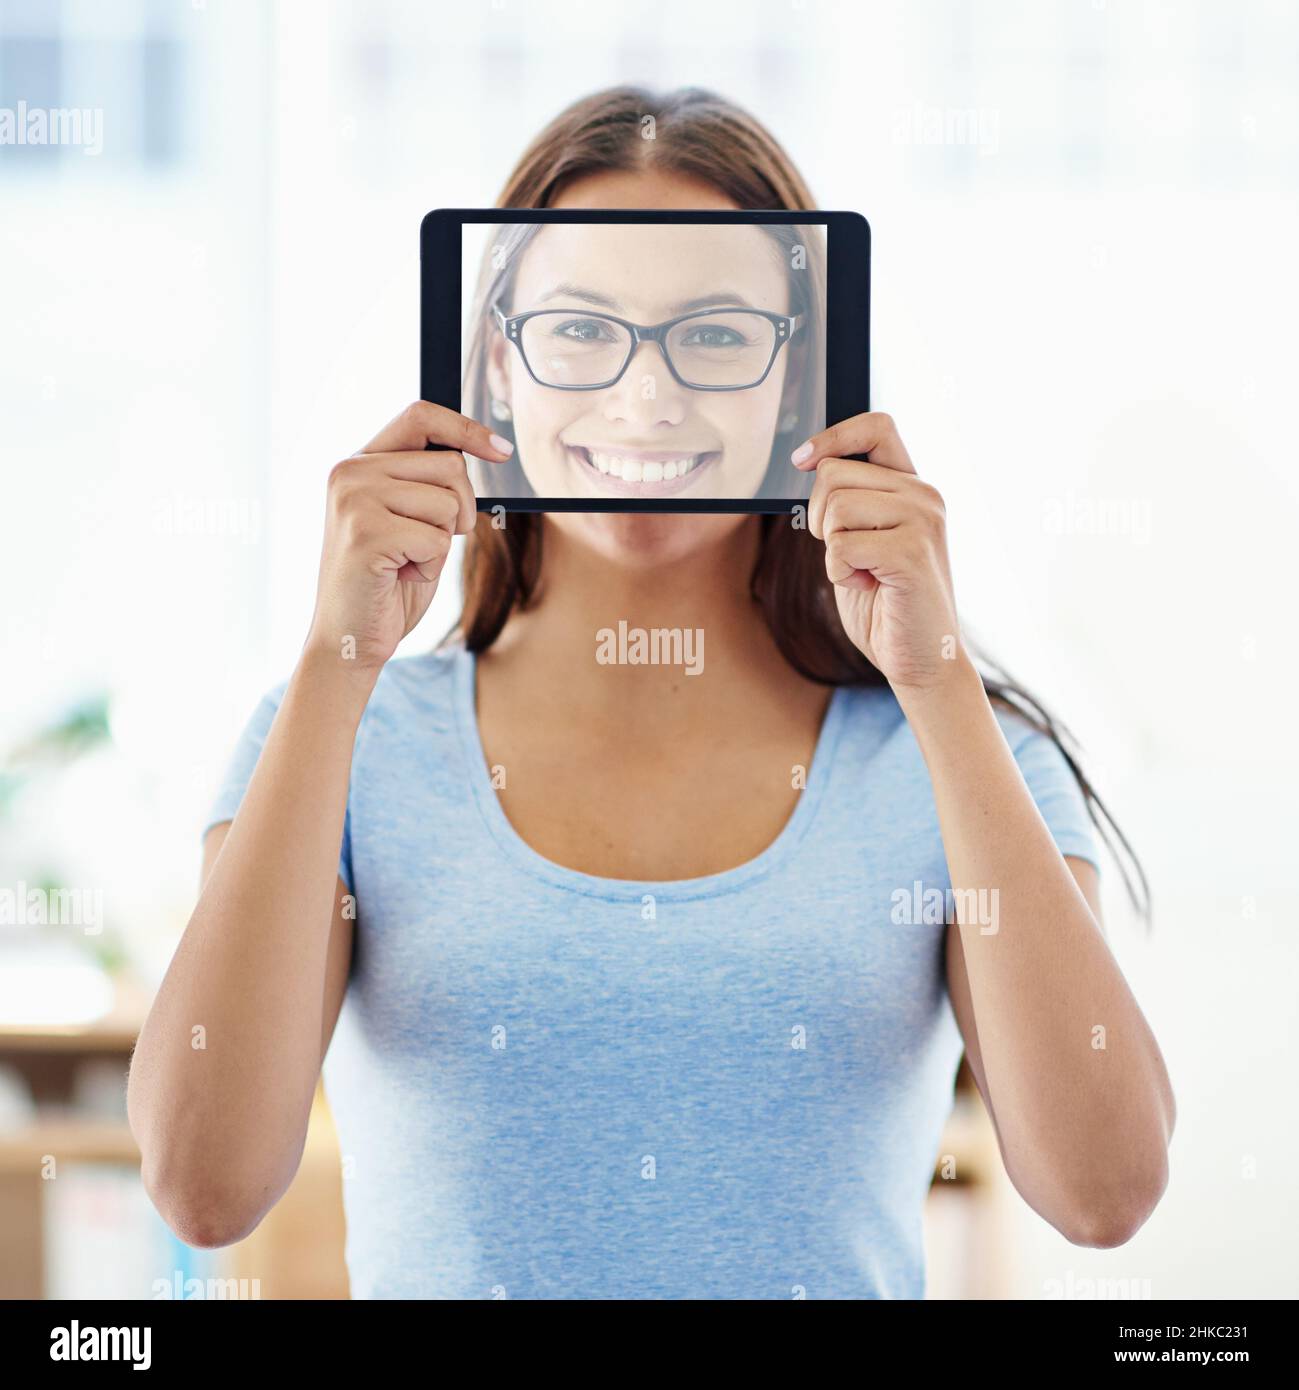 Il volto della tecnologia moderna. Una giovane donna che tiene un tablet digitale con uno schermo trasparente davanti al suo volto. Foto Stock